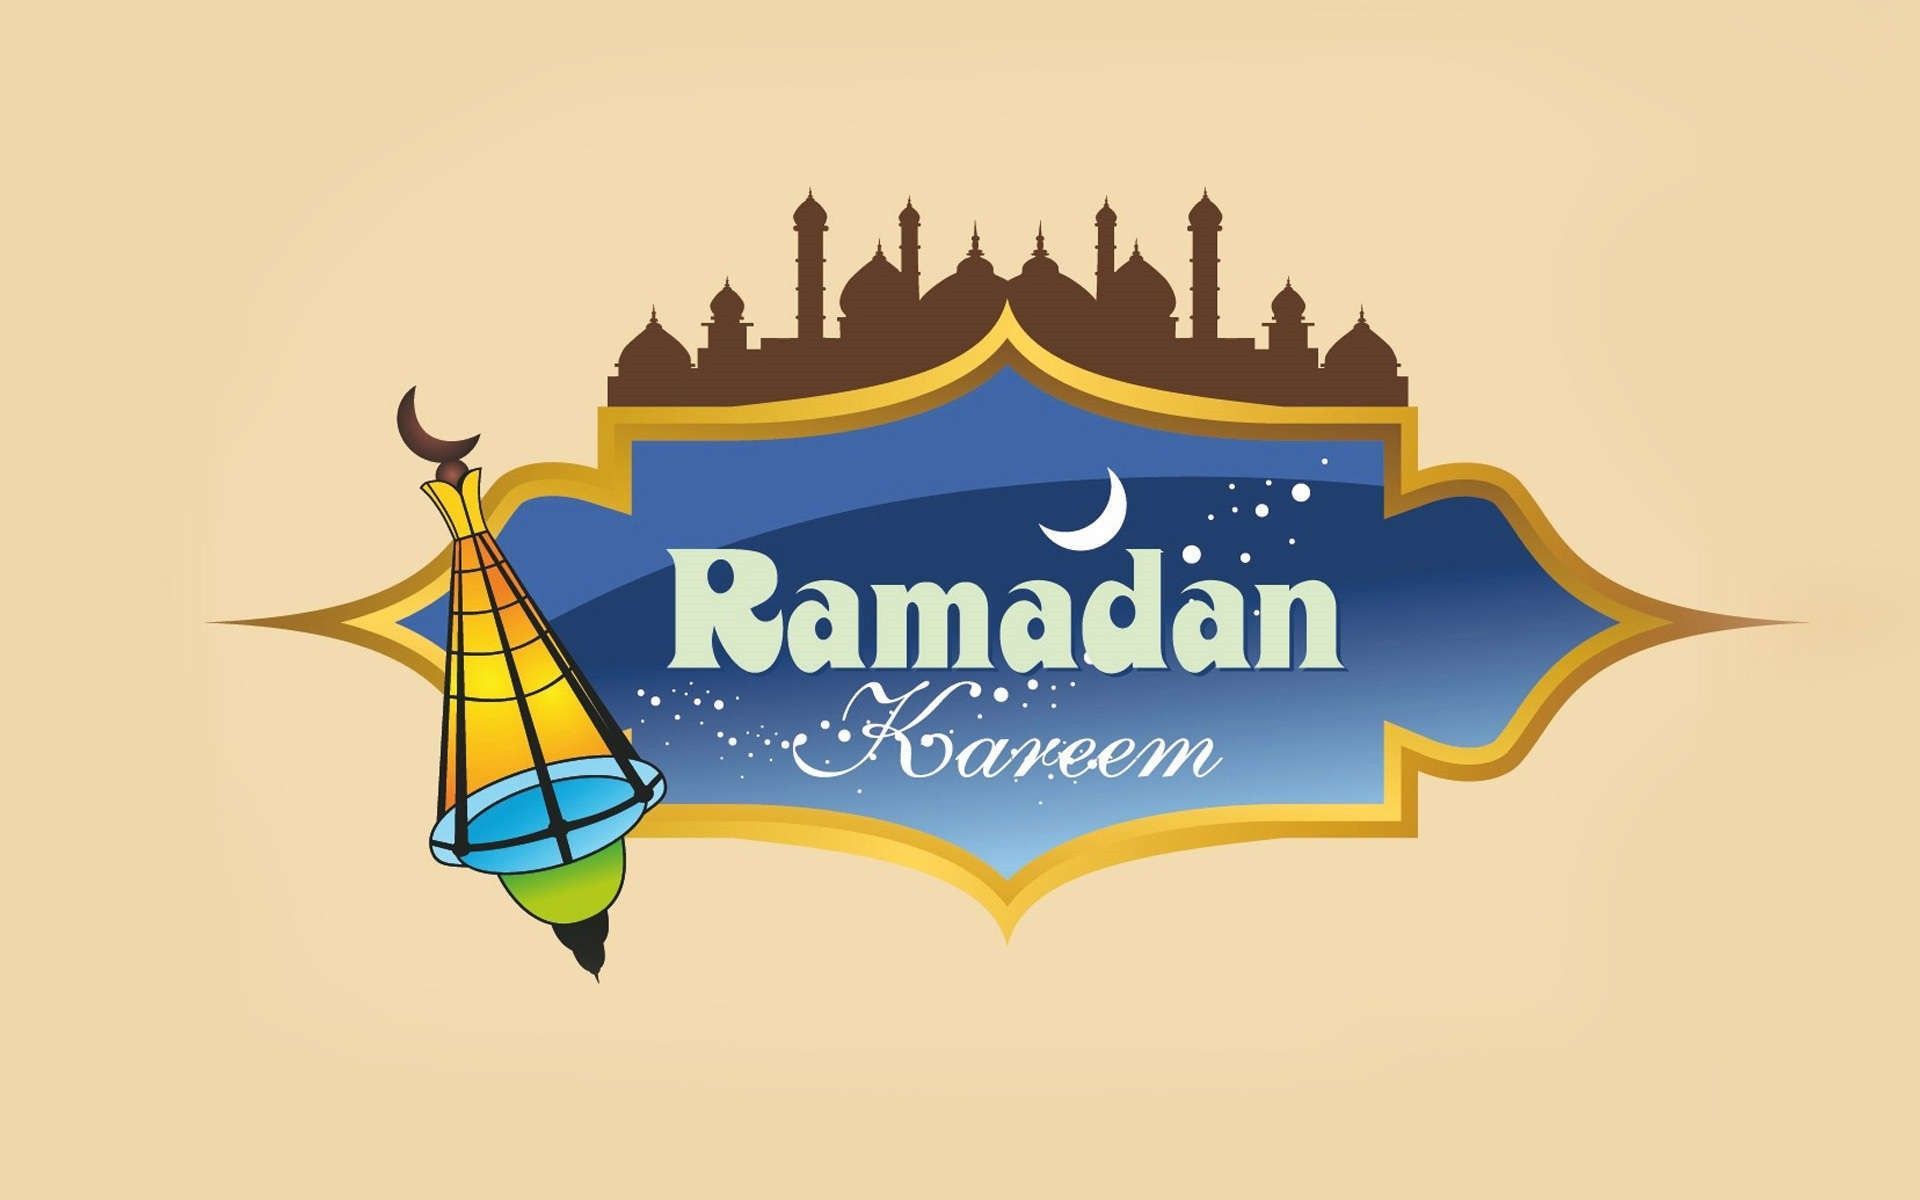 Ramadan Mubarak image & wallpaper 2019. Ramadan kareem picture